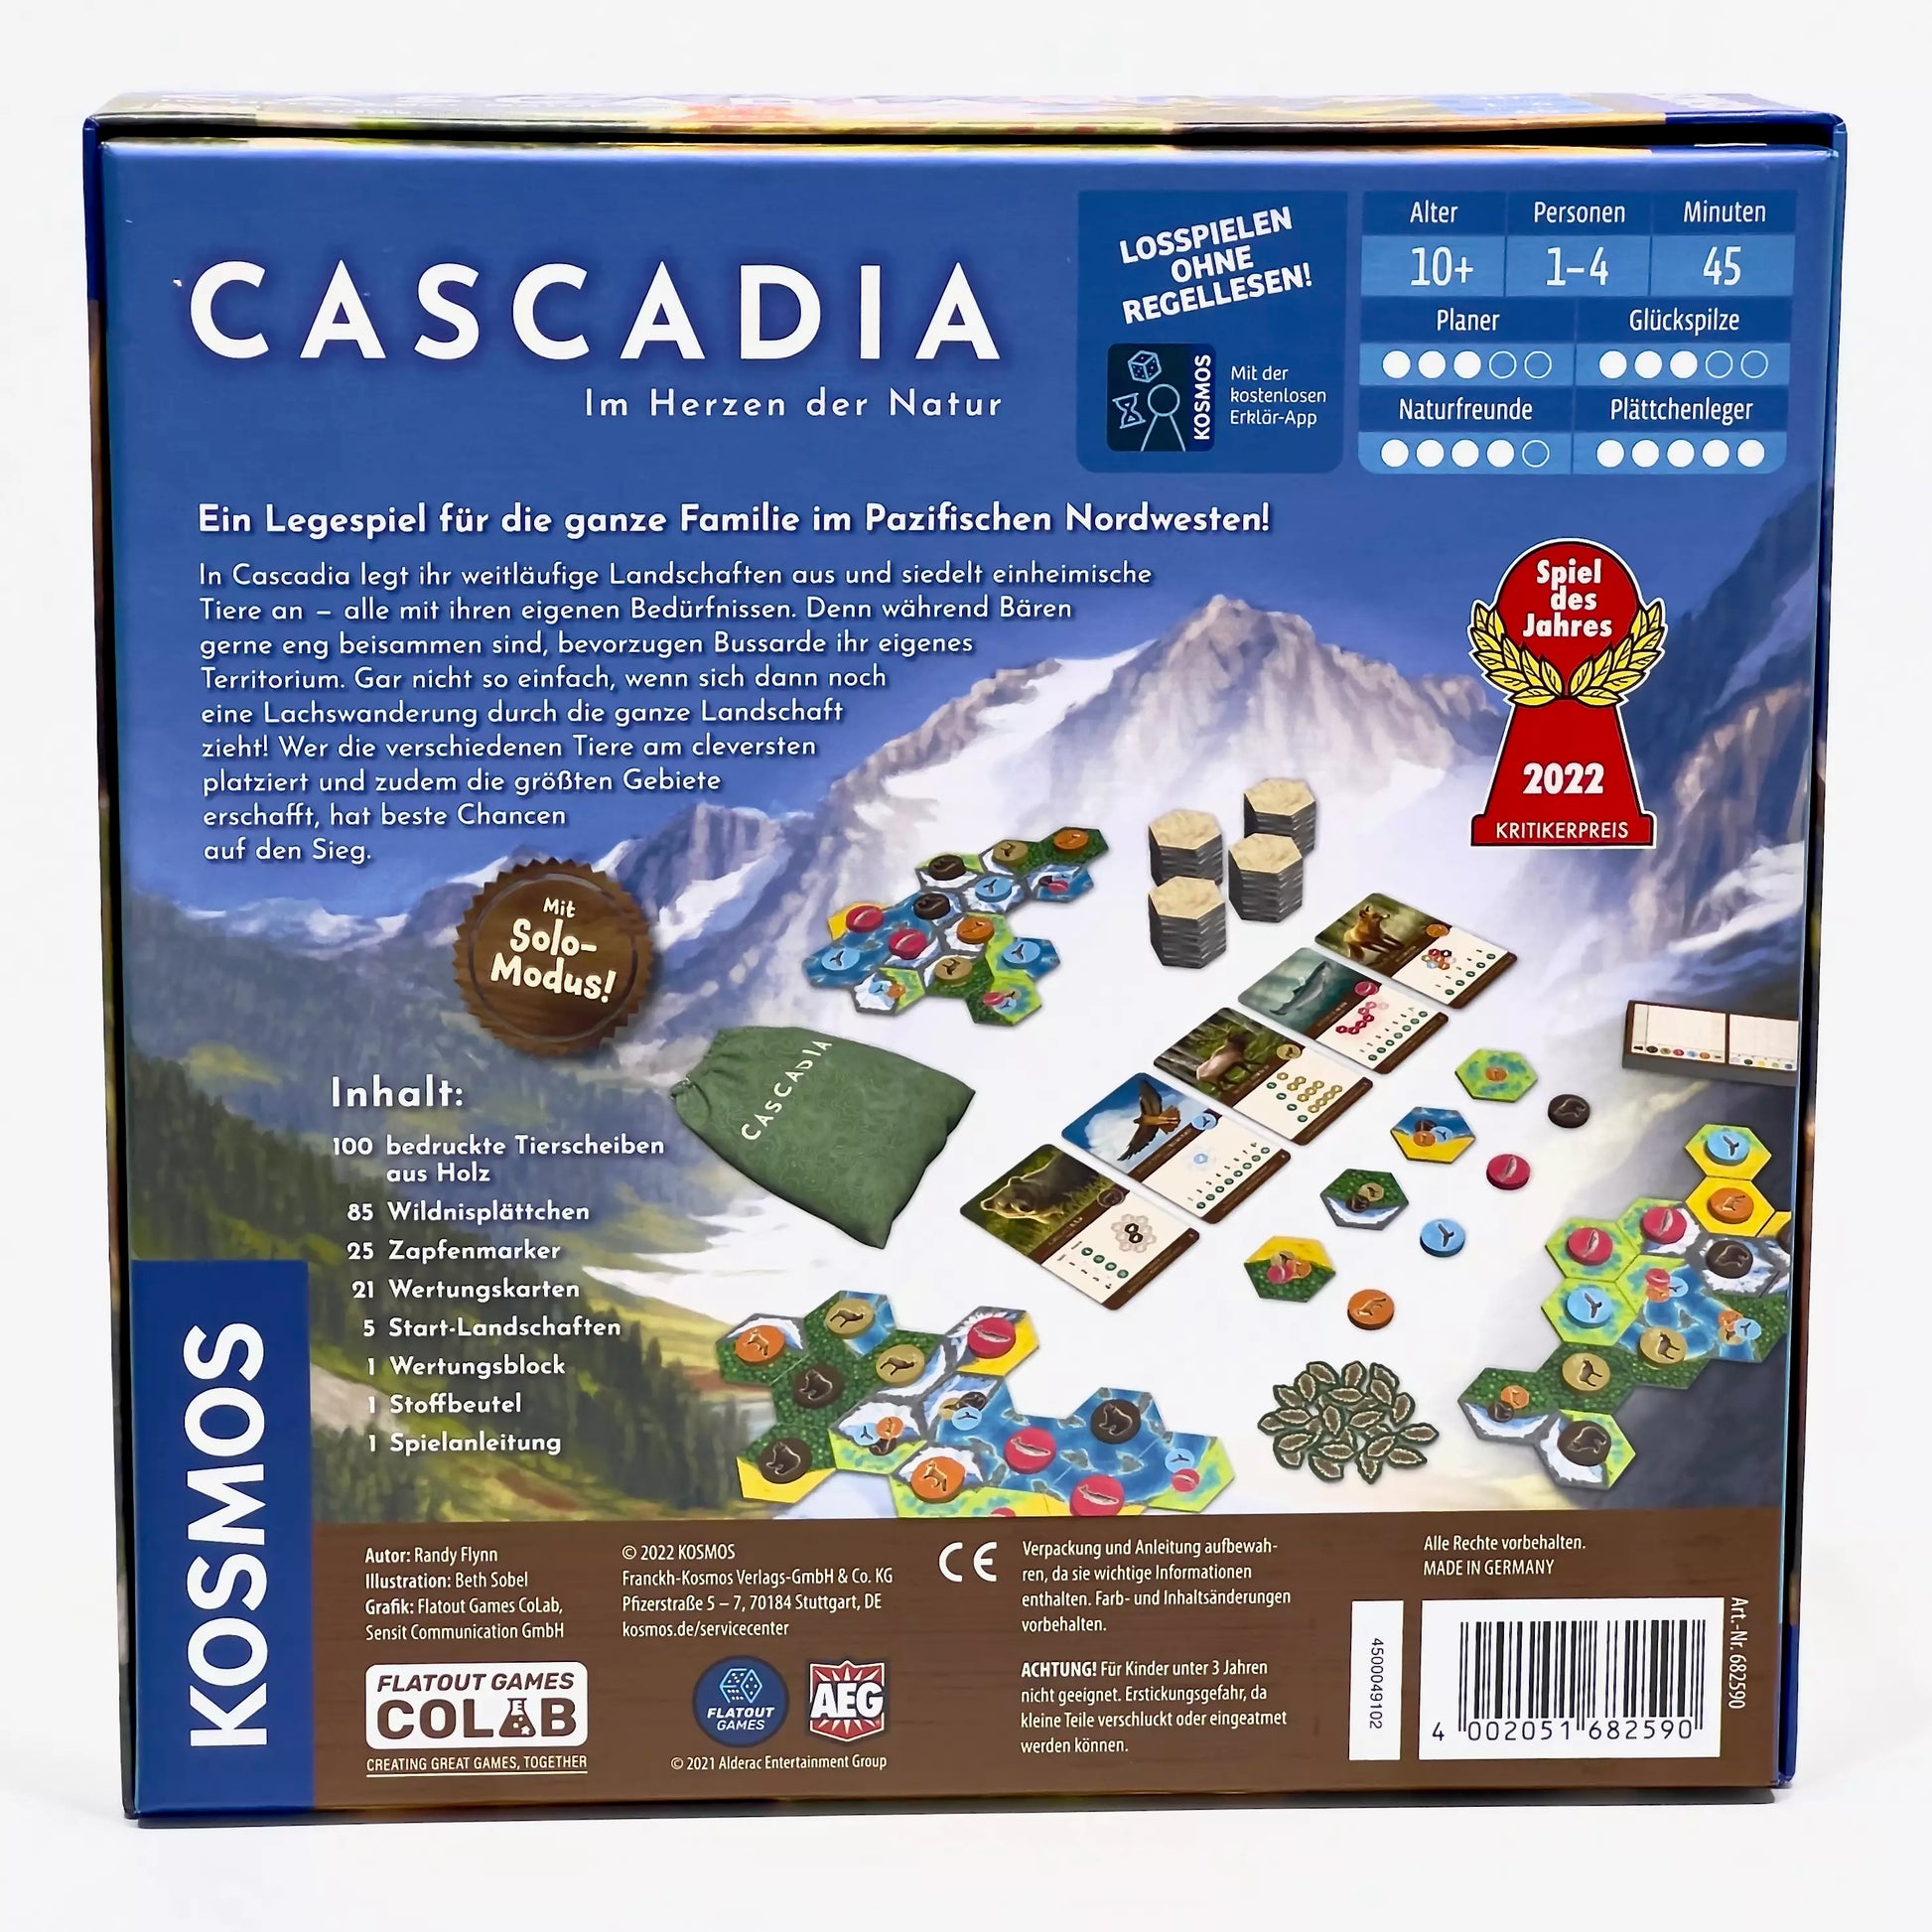 Rückseite Spiel des Jahres 2022 Cascadia im Herzen der Natur Legespiel